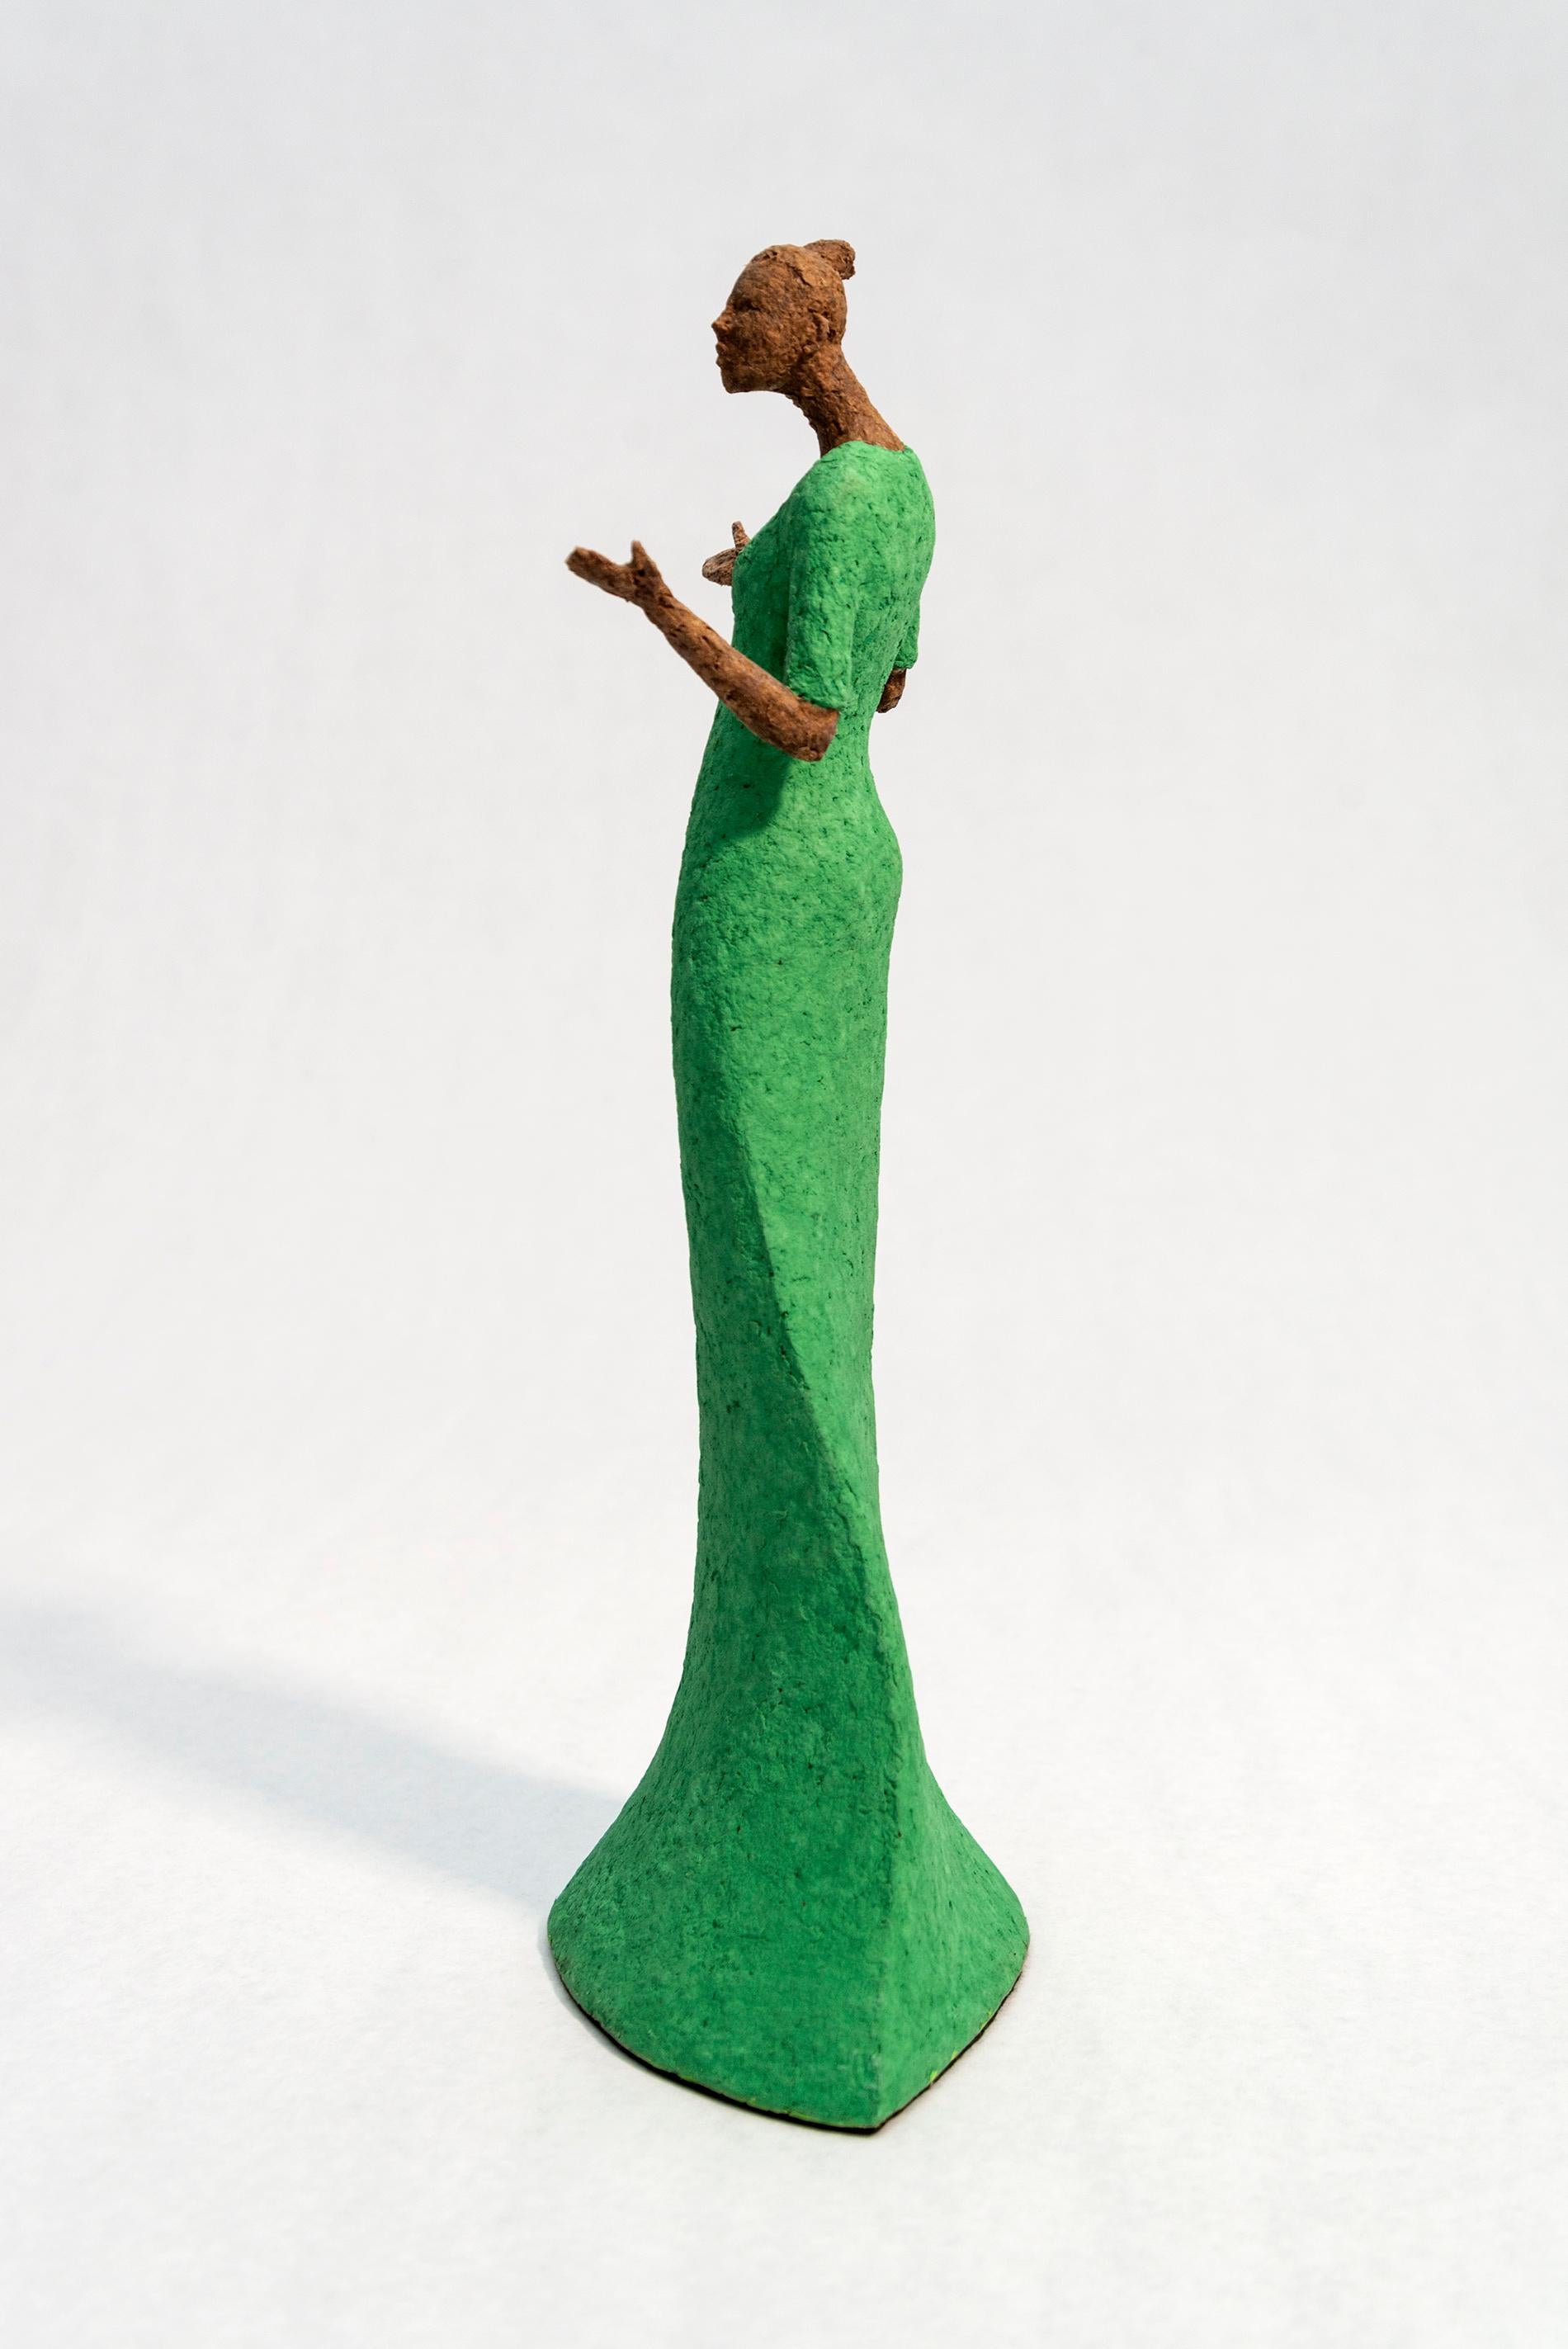 Bella, lumineuse, expressive, texturée, féminine, figurative, sculpture en papier mâché - Contemporain Sculpture par Paul Duval